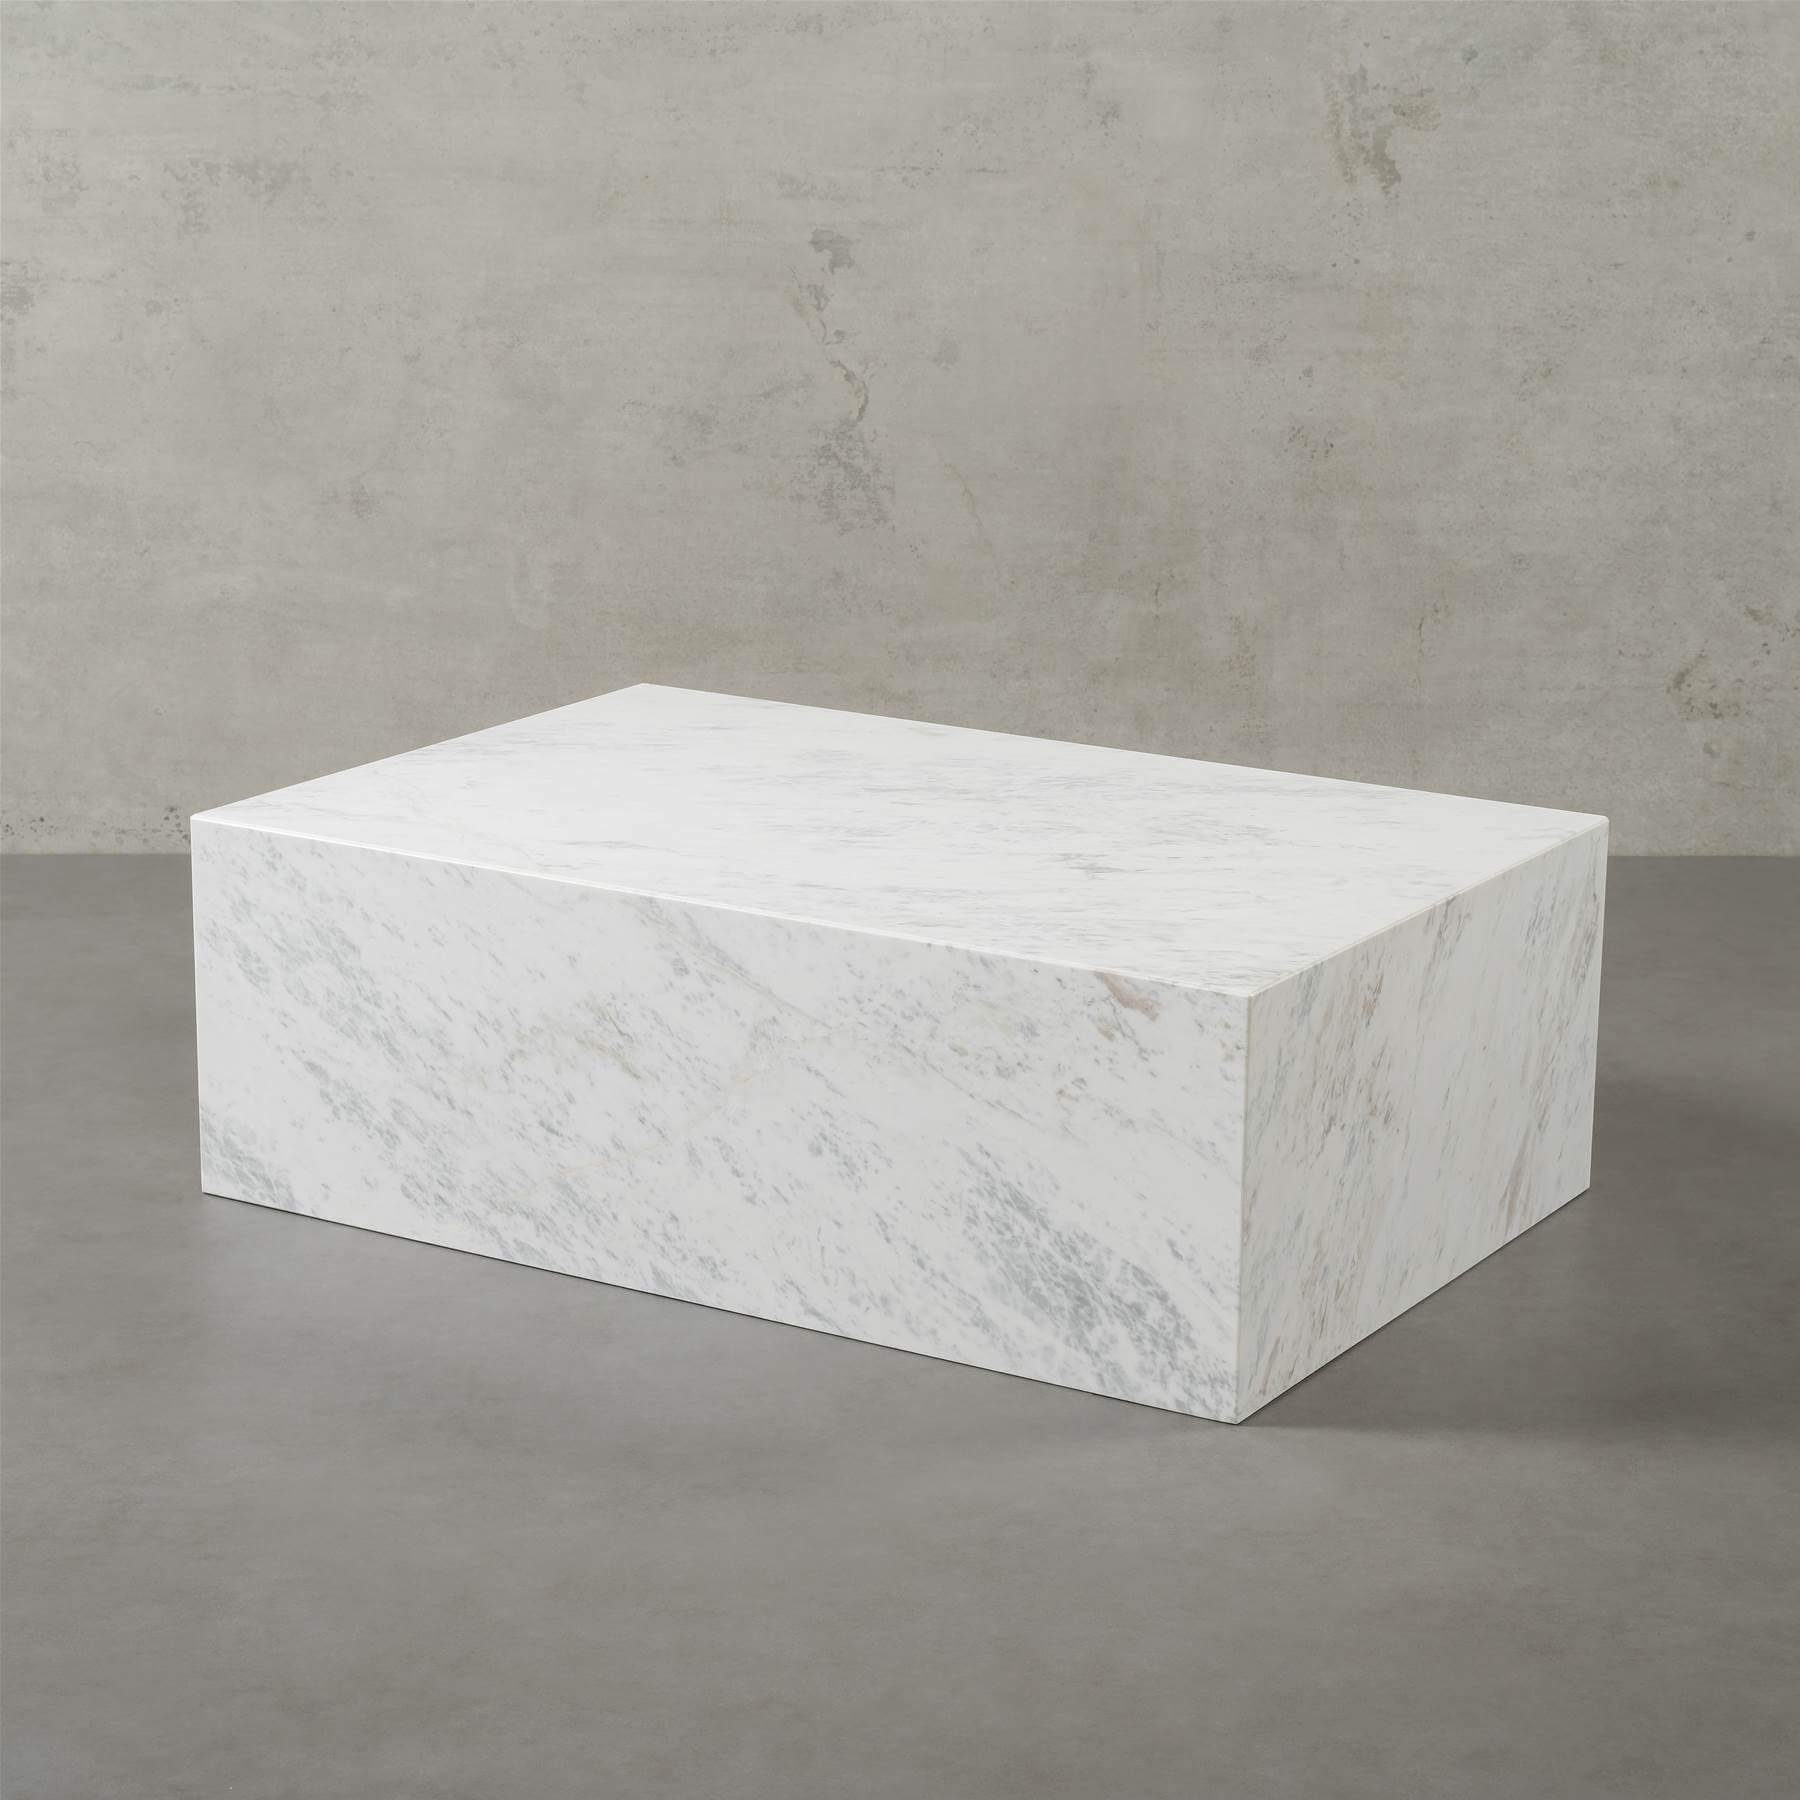 90x60x30cm Tisch Atelier ECHTEM Naturstein, Olympus Couchtisch MARMOR, MAGNA ASPEN Wohnzimmer White mit eckig,